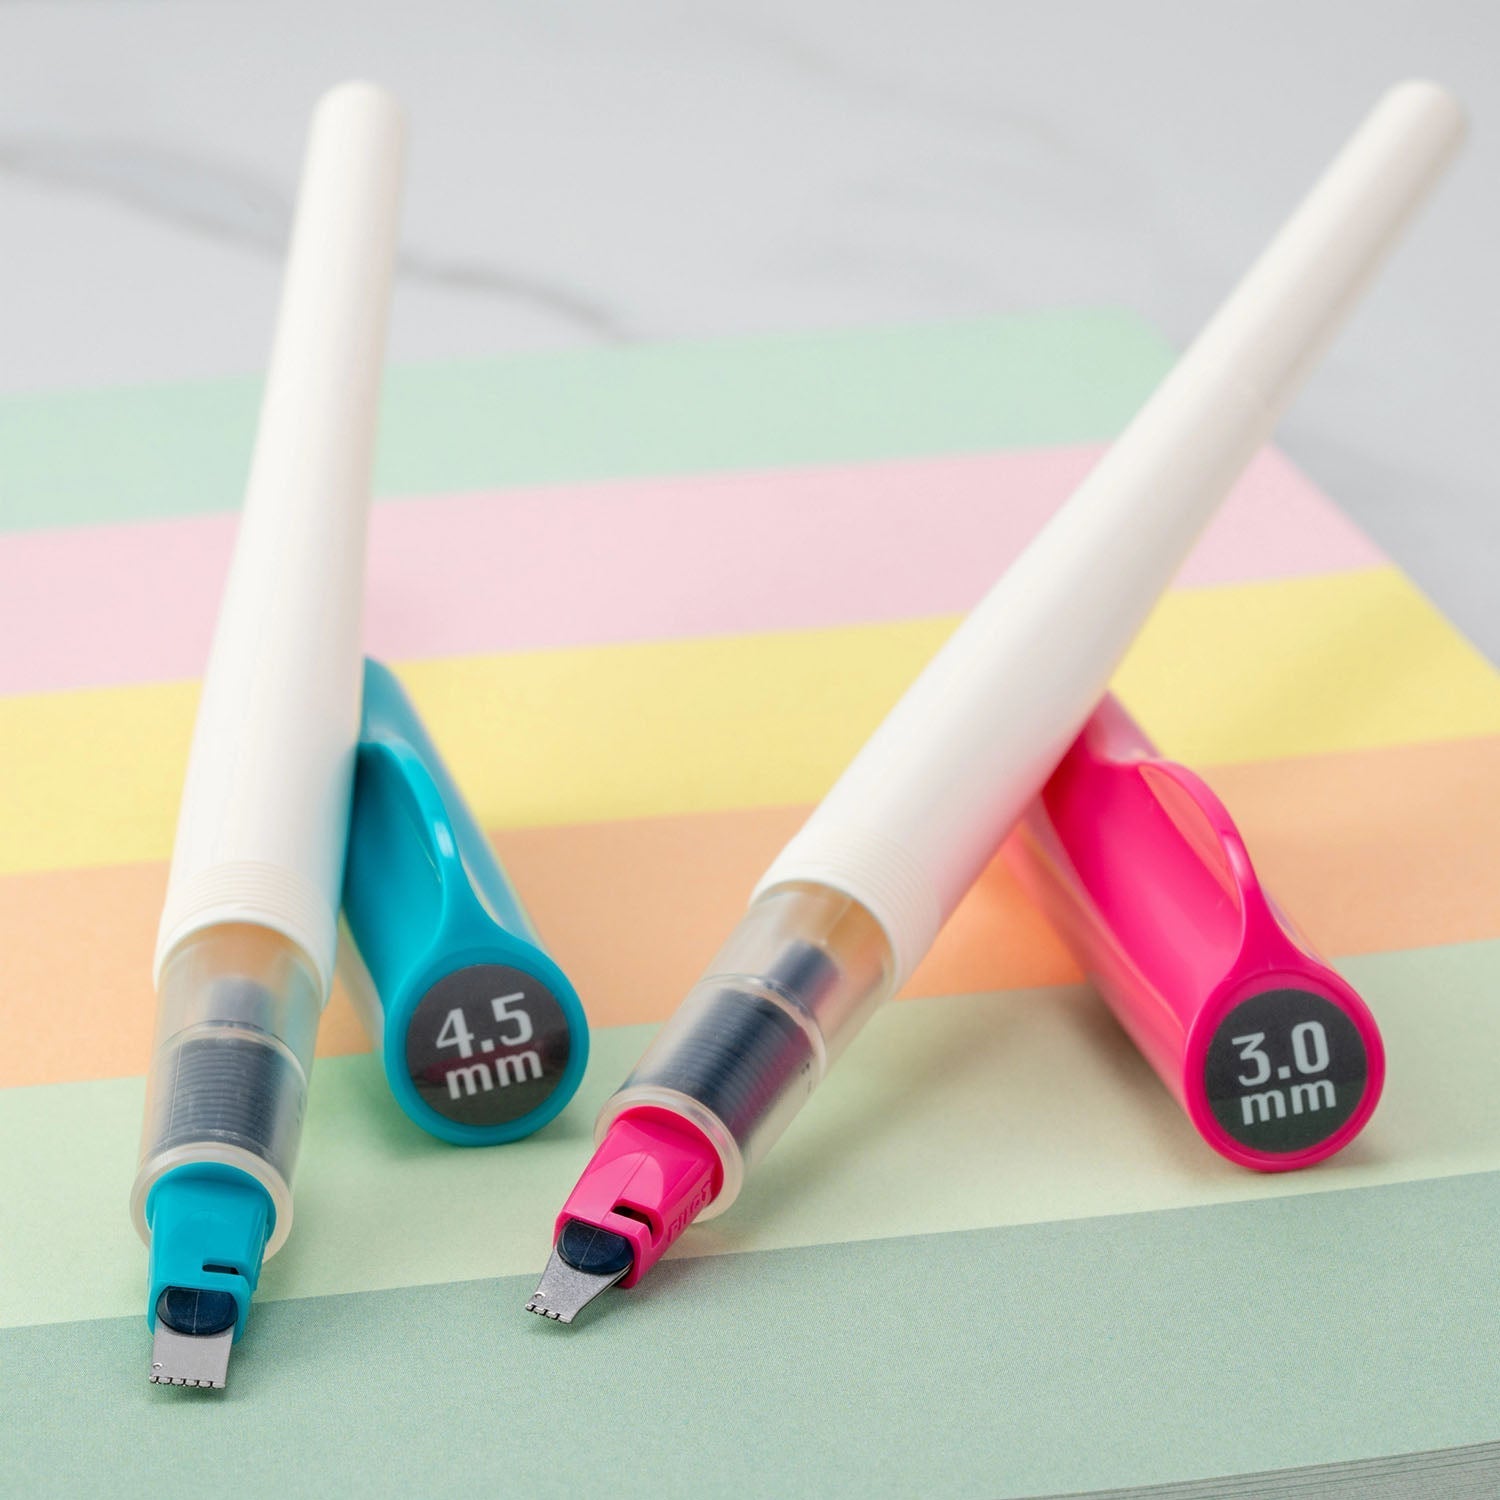 Buy Pilot Parallel Calligraphy Pen Set online